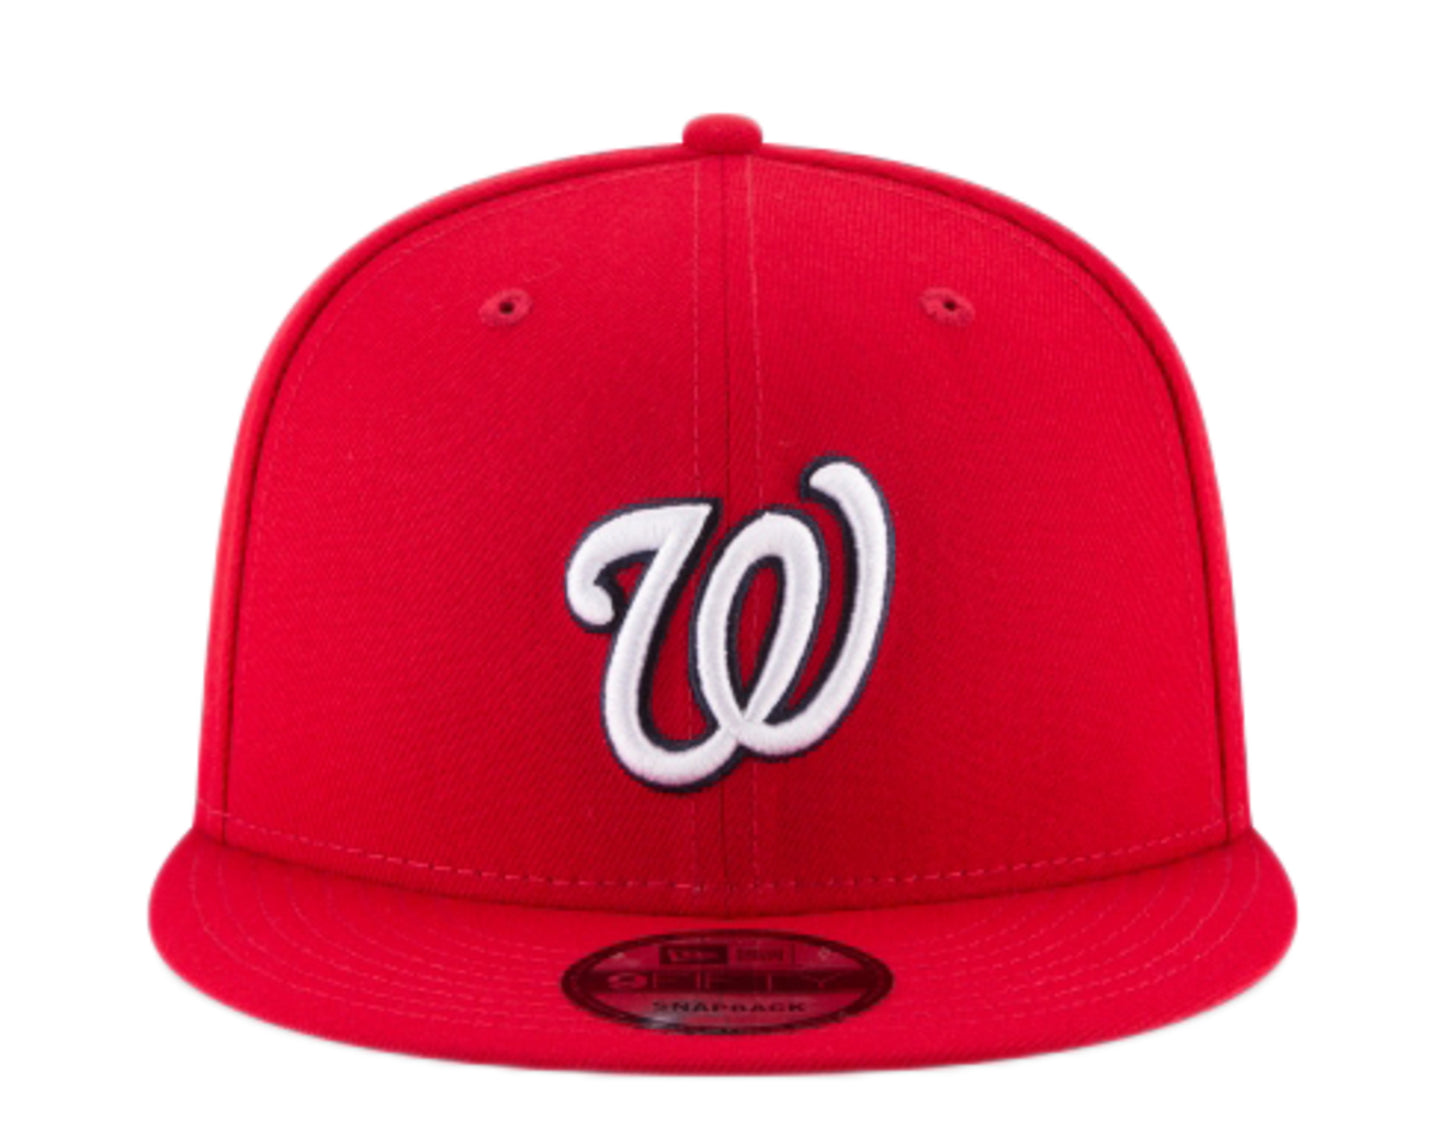 New Era 9Fifty MLB Washington Nationals Basic Red Snapback Hat 11590989